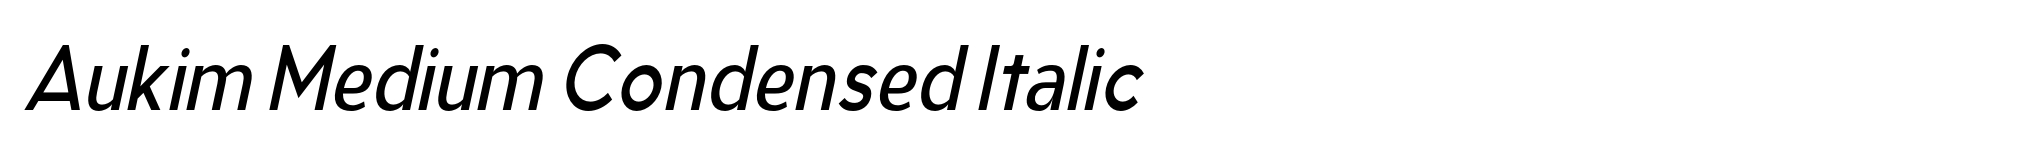 Aukim Medium Condensed Italic image